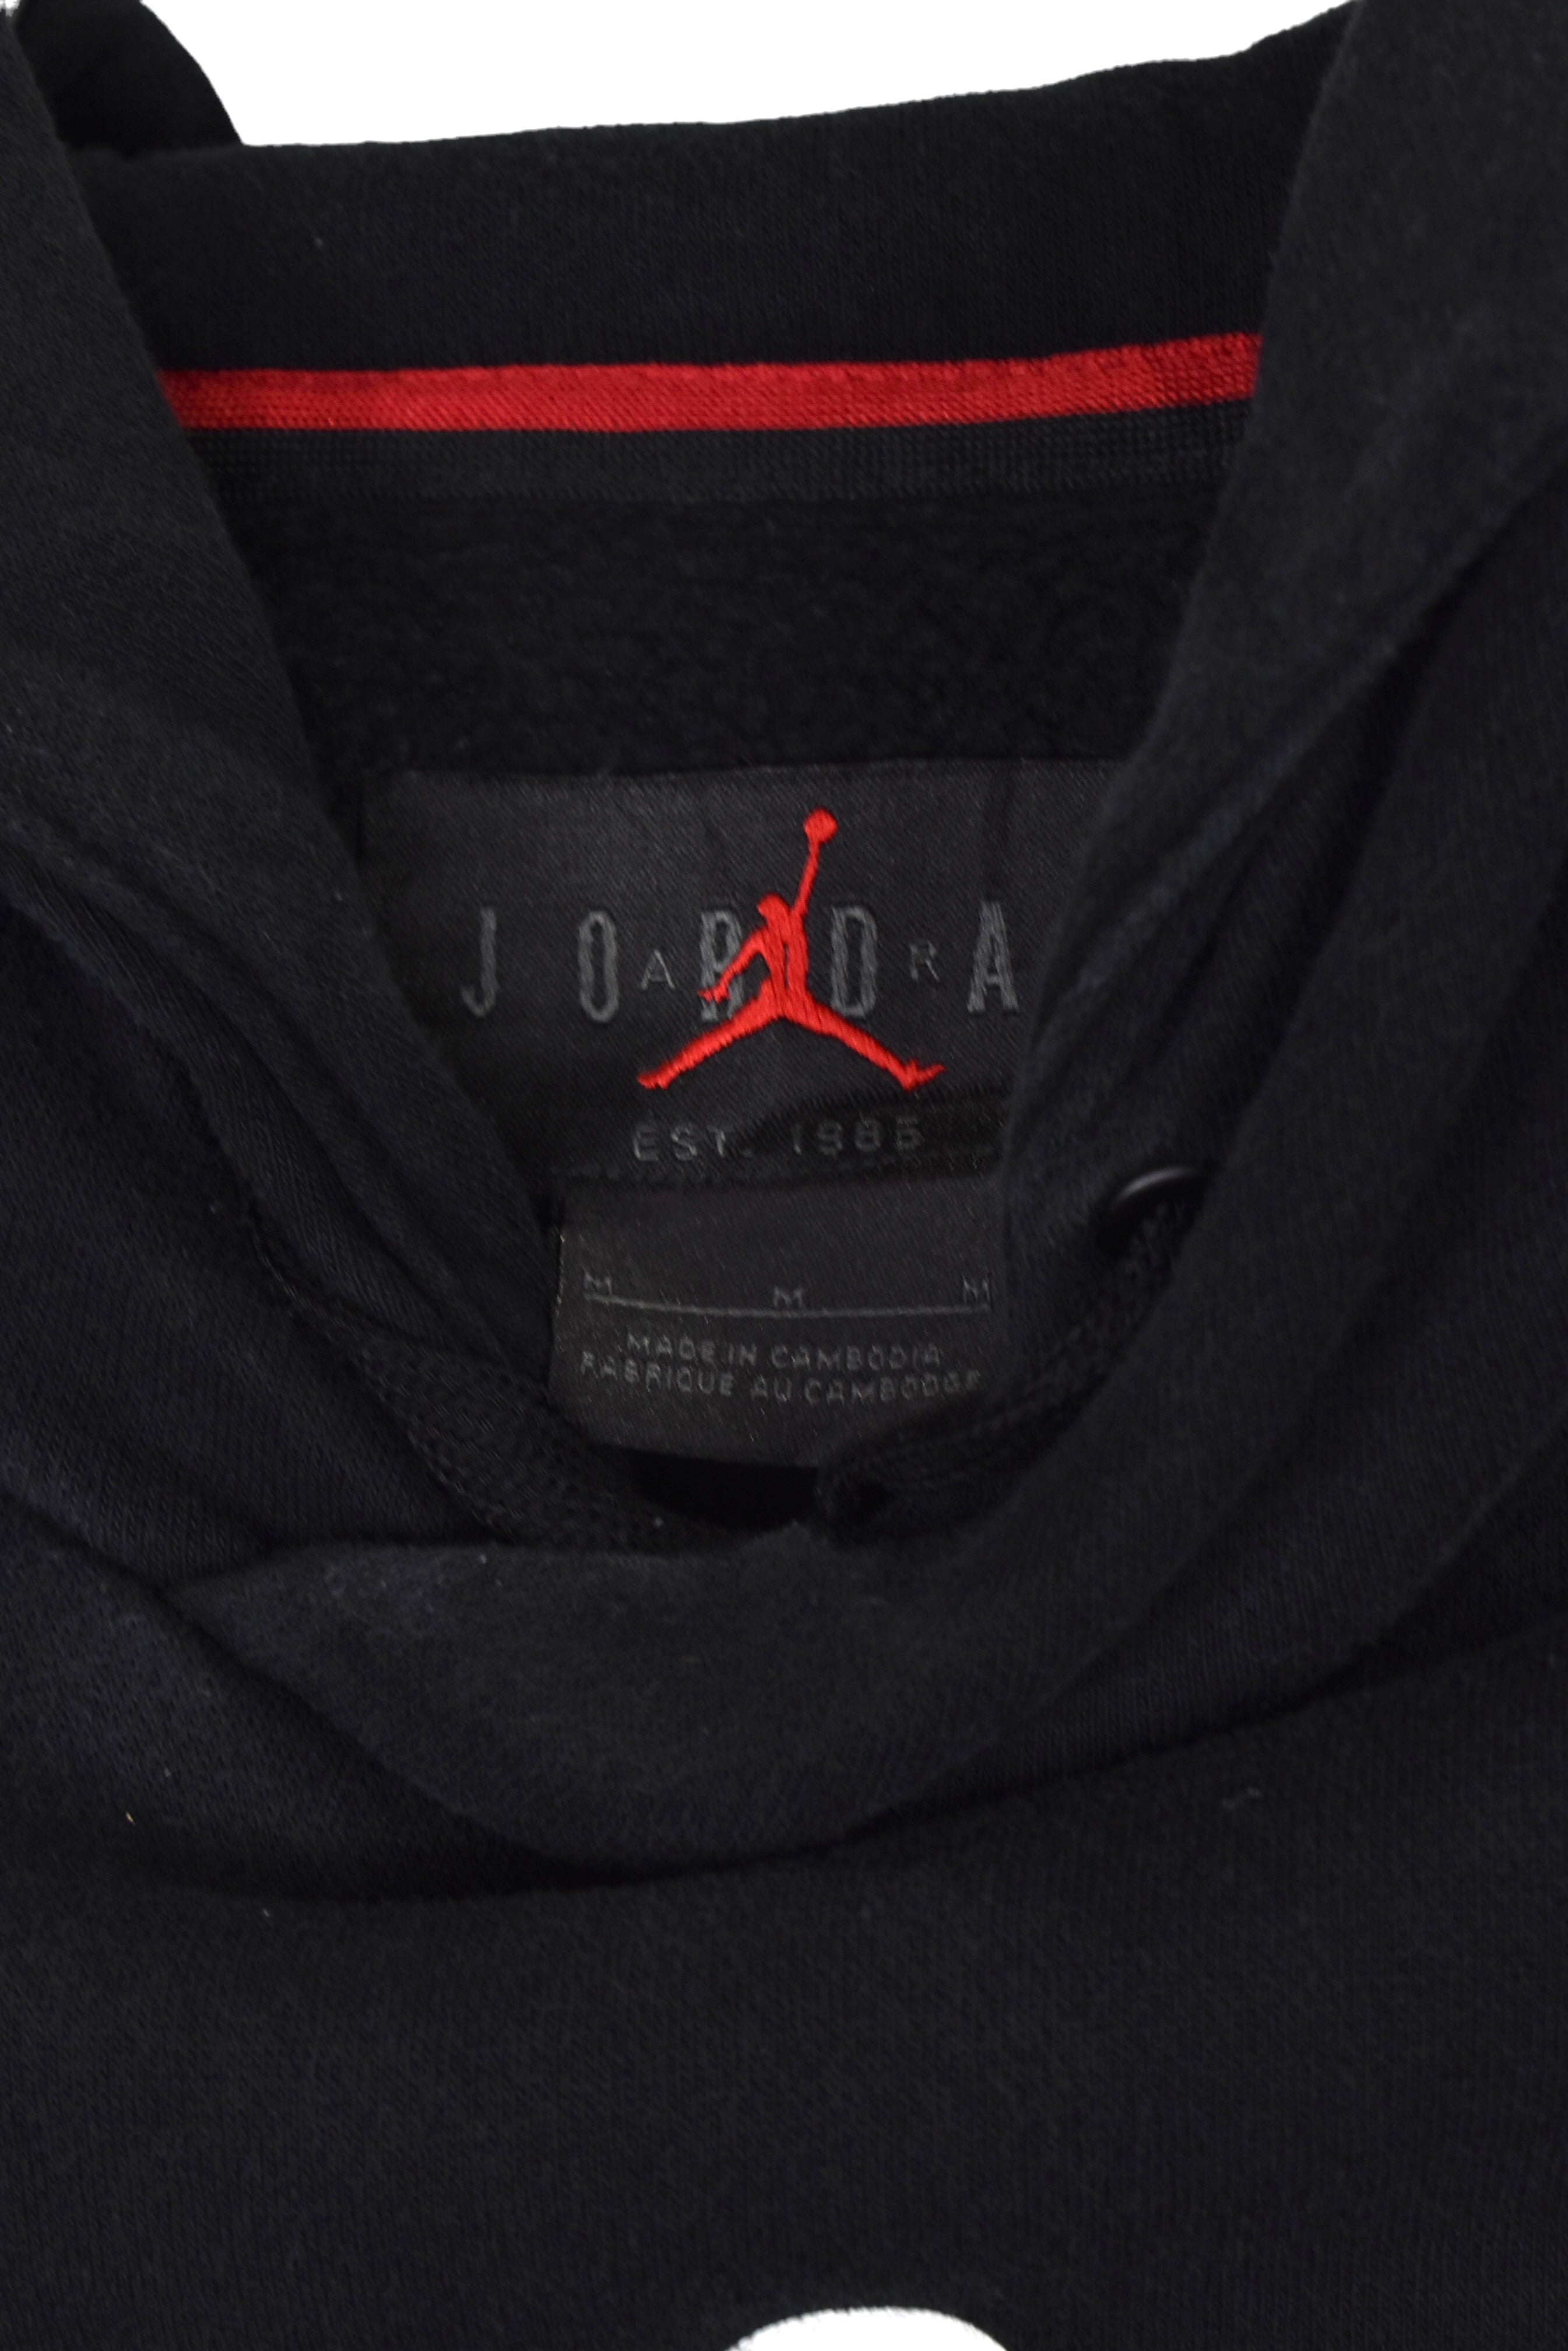 Vintage Nike Air Jordan hoodie (M), black graphic sweatshirt